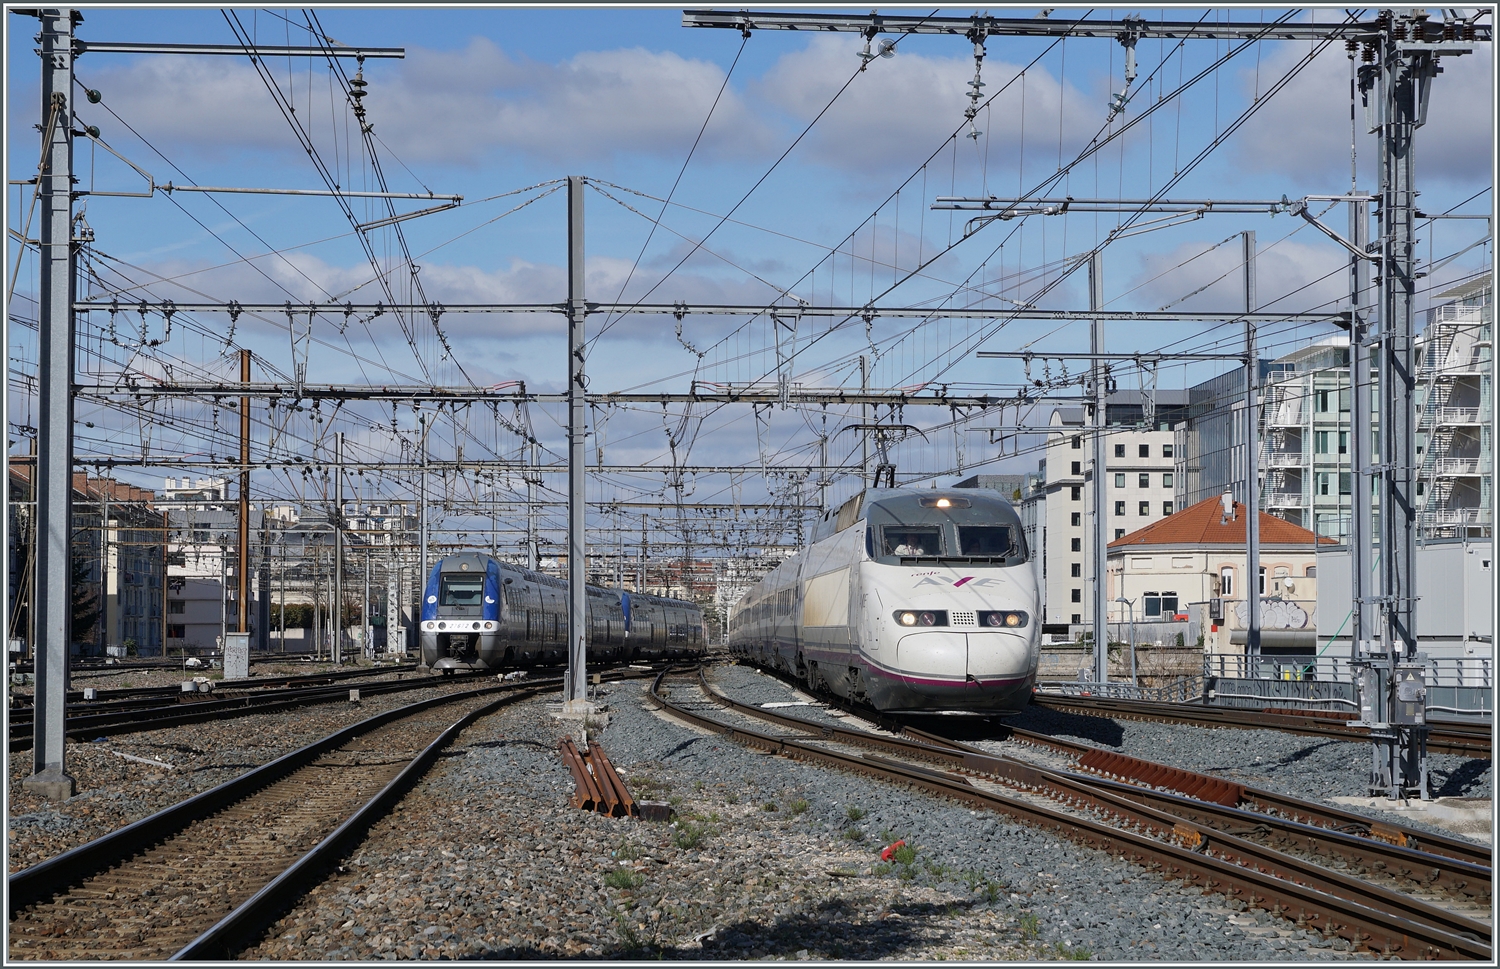 Während links im Bild der SNCF 27672 und ein weiterer als TER in Lyon Part Dieu ankommen, erreicht der RENFE AVE 100 221-1 (9 6 71 9-100 221-1) vom (ehemaligen) Bahnhof Lyon Brottaux kommend zur Bereitstellung den Bahnhof Lyon Part Dieu. Der AVE Zug war kurzzeitig in Lyon Brottaux abgestellt. Der RENFE AVE 100 122 wird als AVE 9742 von Lyon (ab 14:32) nach Barcelona Sants (an 19:34) fahren.  

13. März 2024